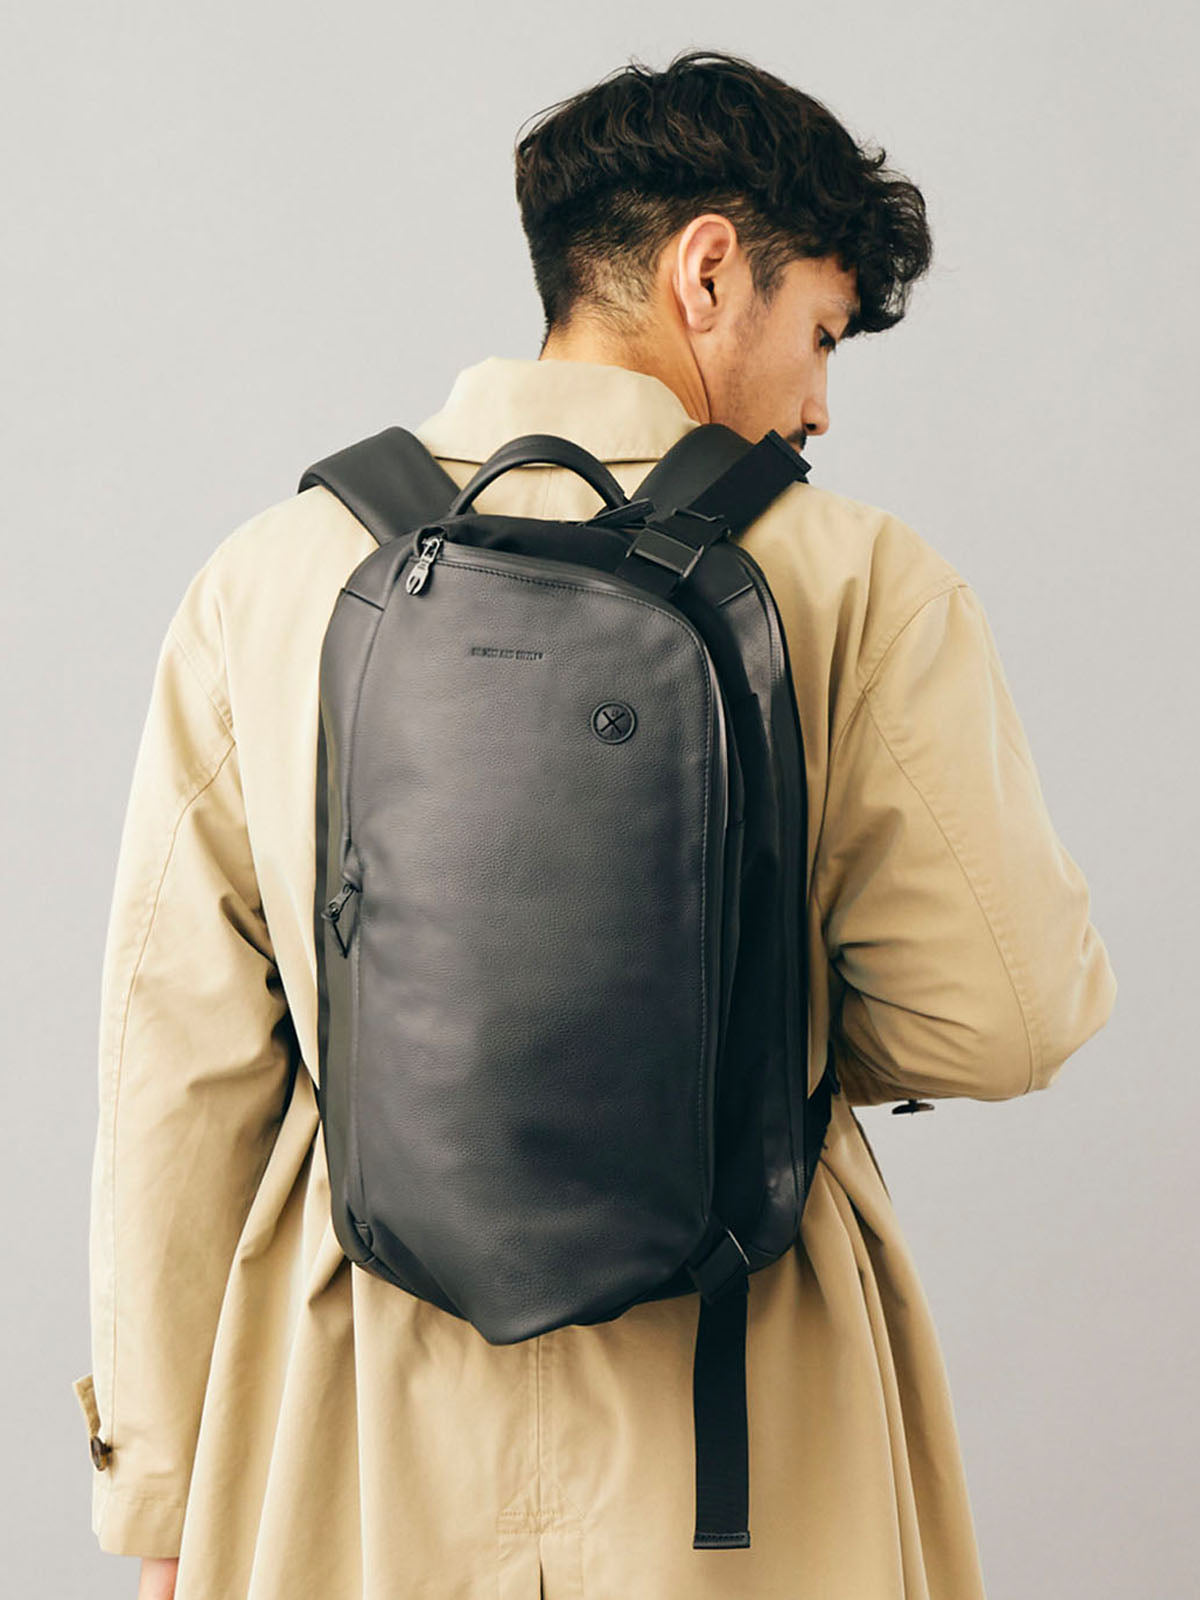 BROSKI AND SUPPLY Adjust multi backpack18000円になりませんか